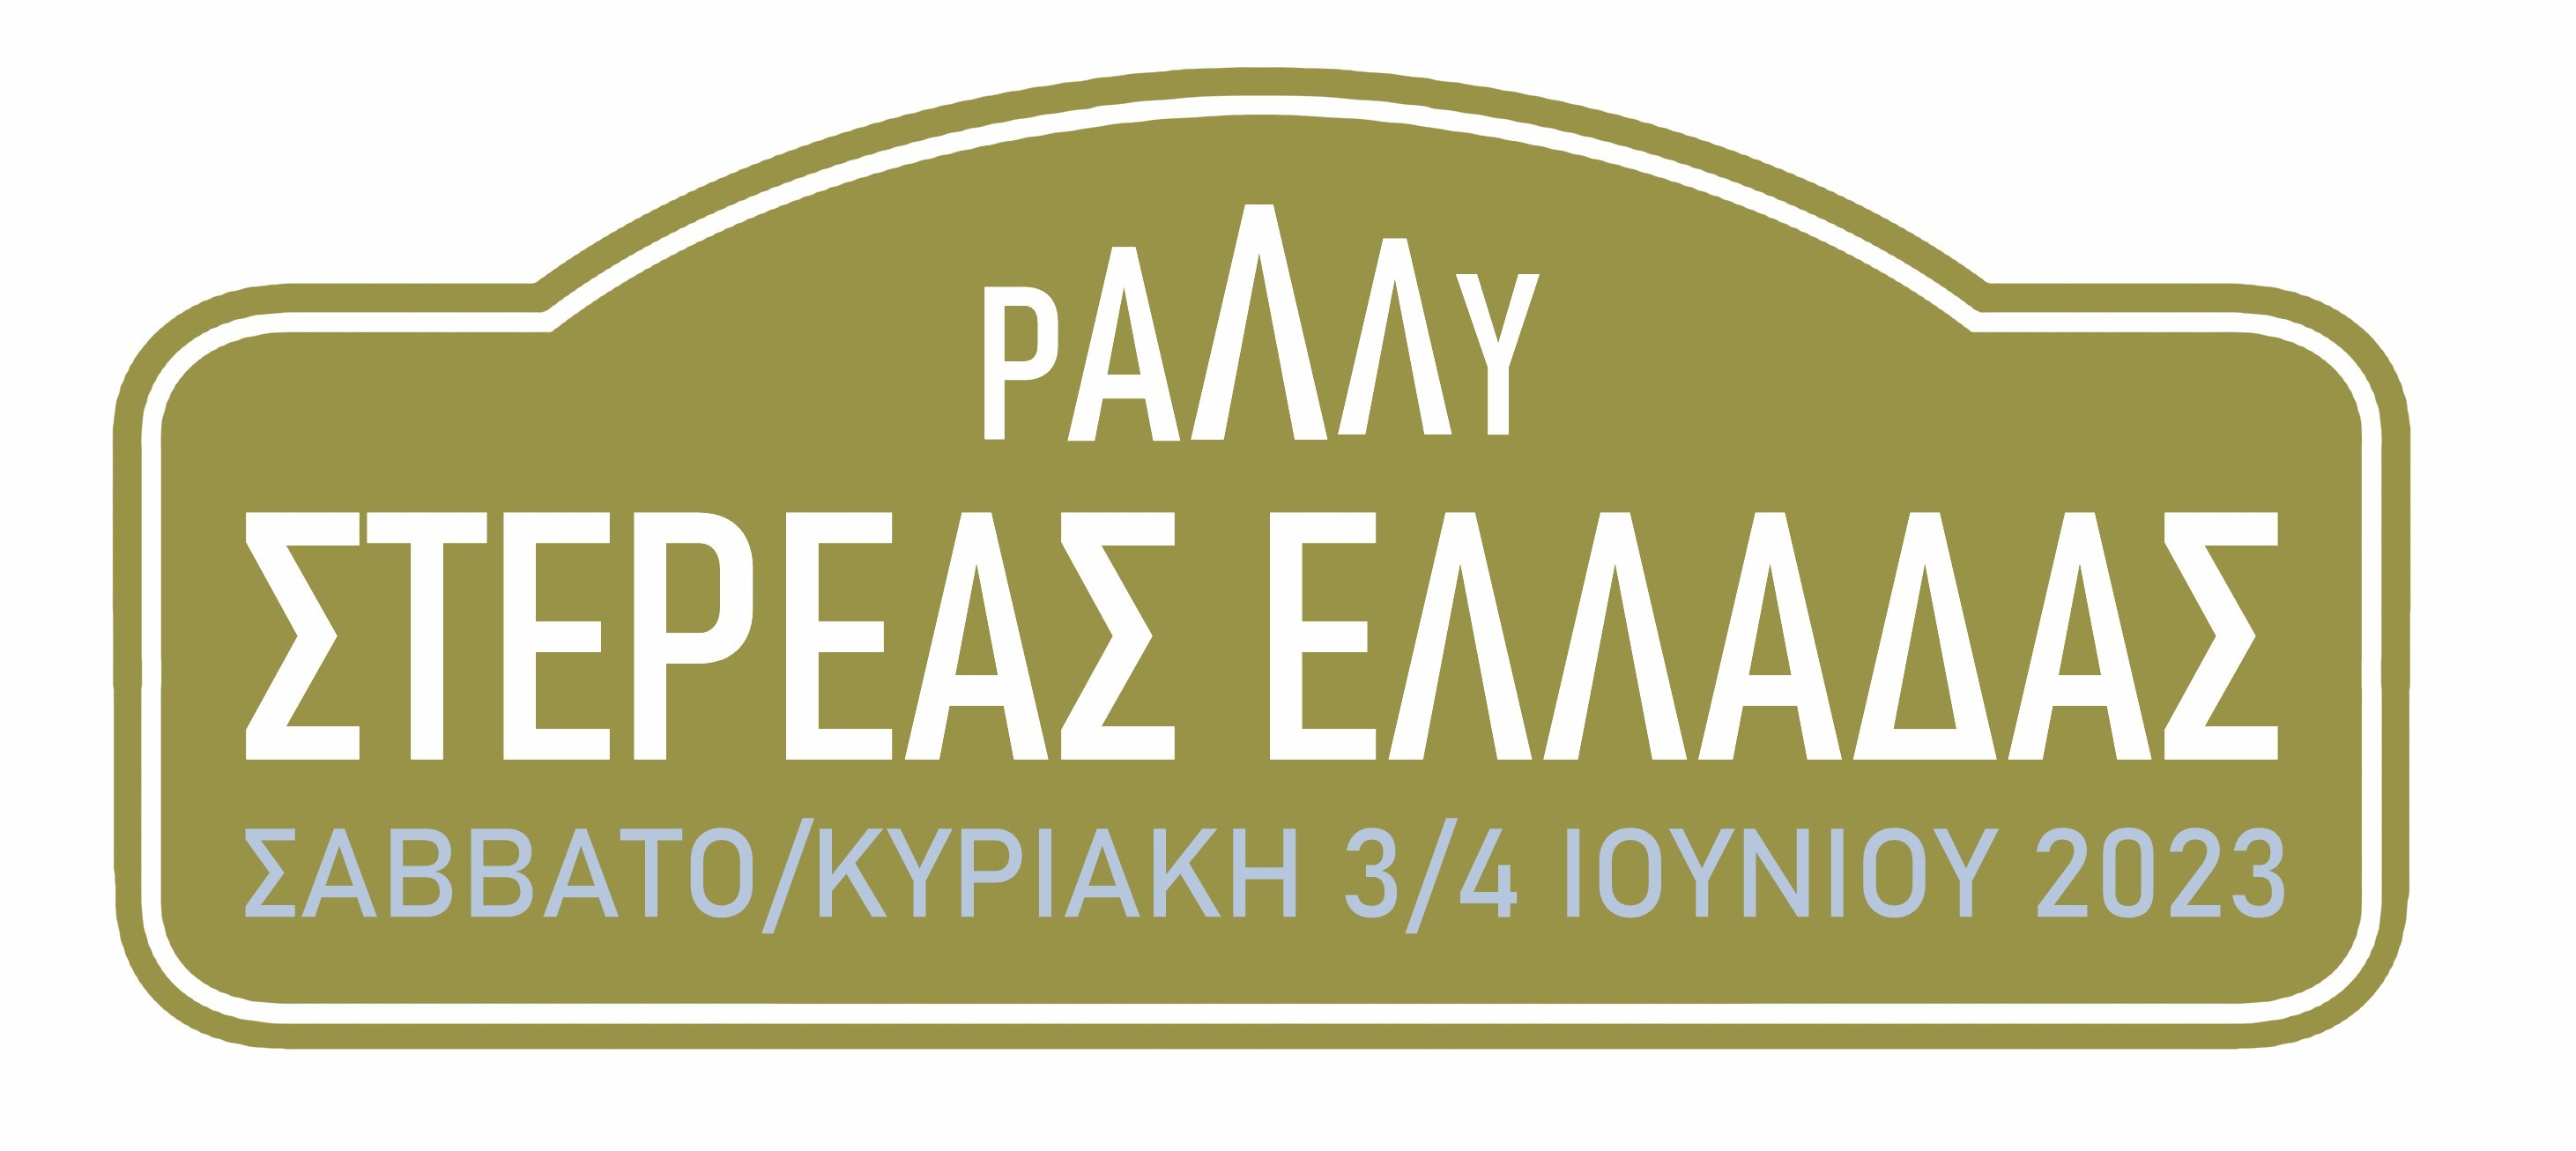 Ράλλυ Στερεάς Ελλάδας 2023 Logo